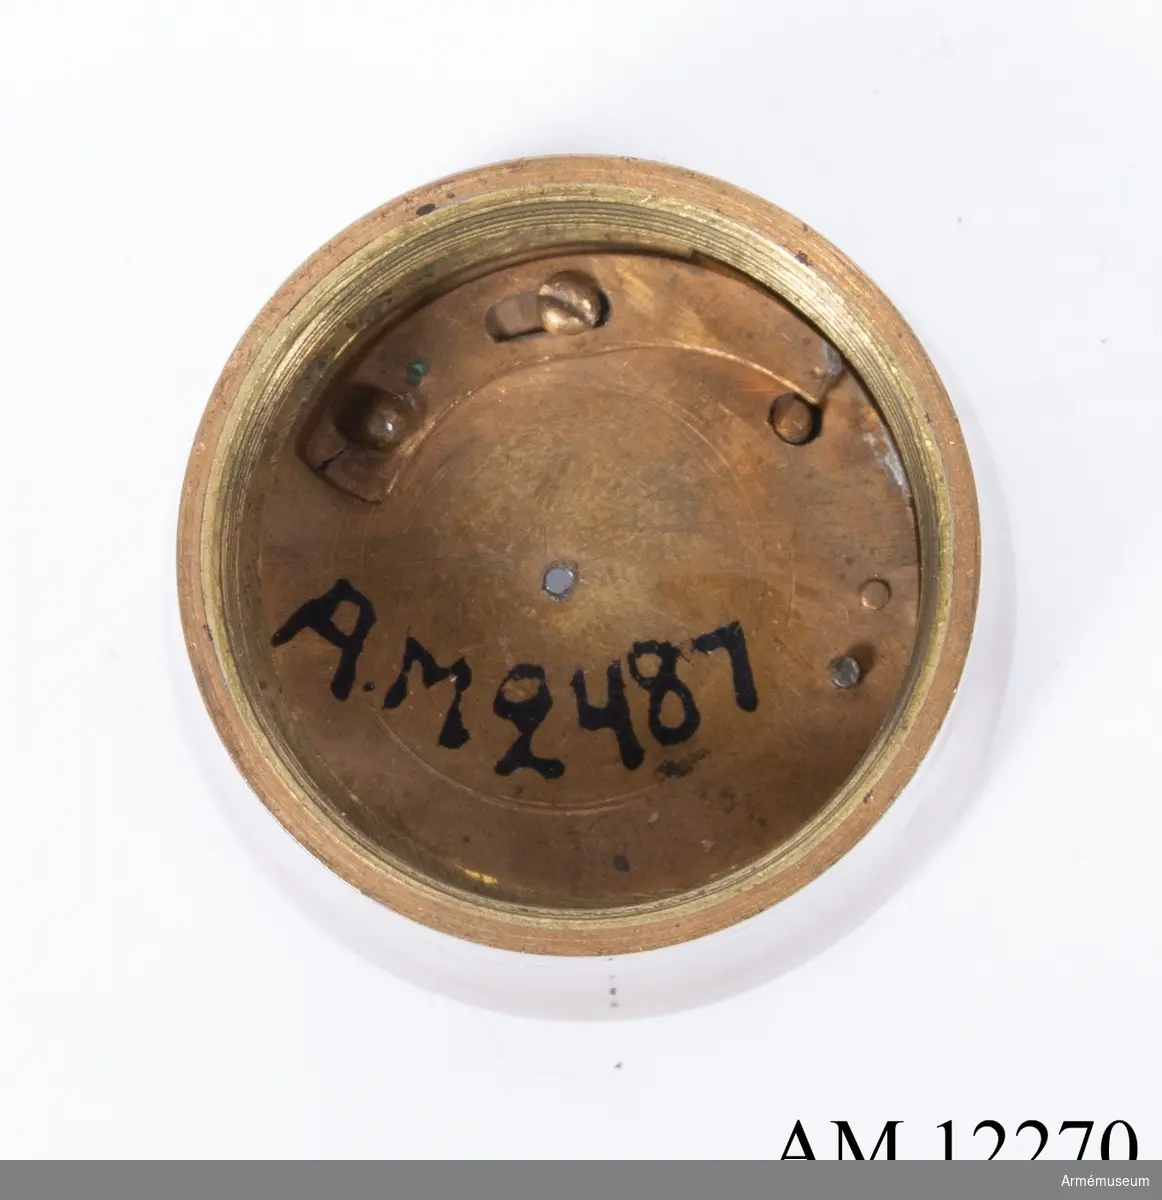 Grupp M V. 
I knappen har varit apterad kompass och solvisare. I käppen förvaras: 2487:1, fyrkantig skena av mässing, märkt "I.P. ROSENBERG FECIT N:1", omkr år 1736, med därpå uppstucken artillerimåttstock av år 1705. Dessutom är skenan försedd med 2 vattenpass, 3 dioptrar och fällbar kvadrant.